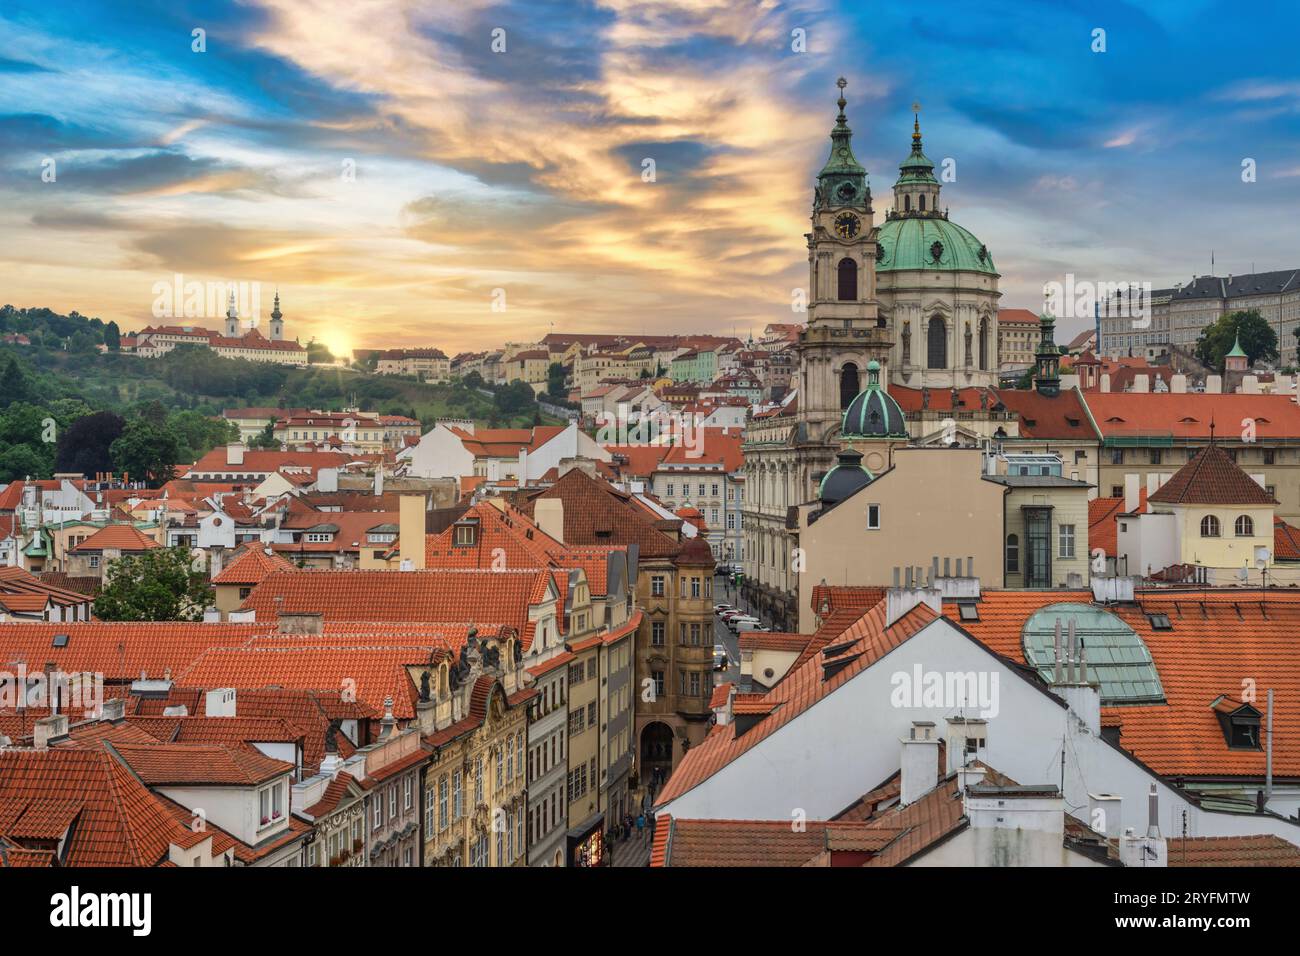 Prague République tchèque, vue à angle élevé coucher de soleil Skyline de la ville à Prague vieille ville et St. Nicholas Churc Banque D'Images